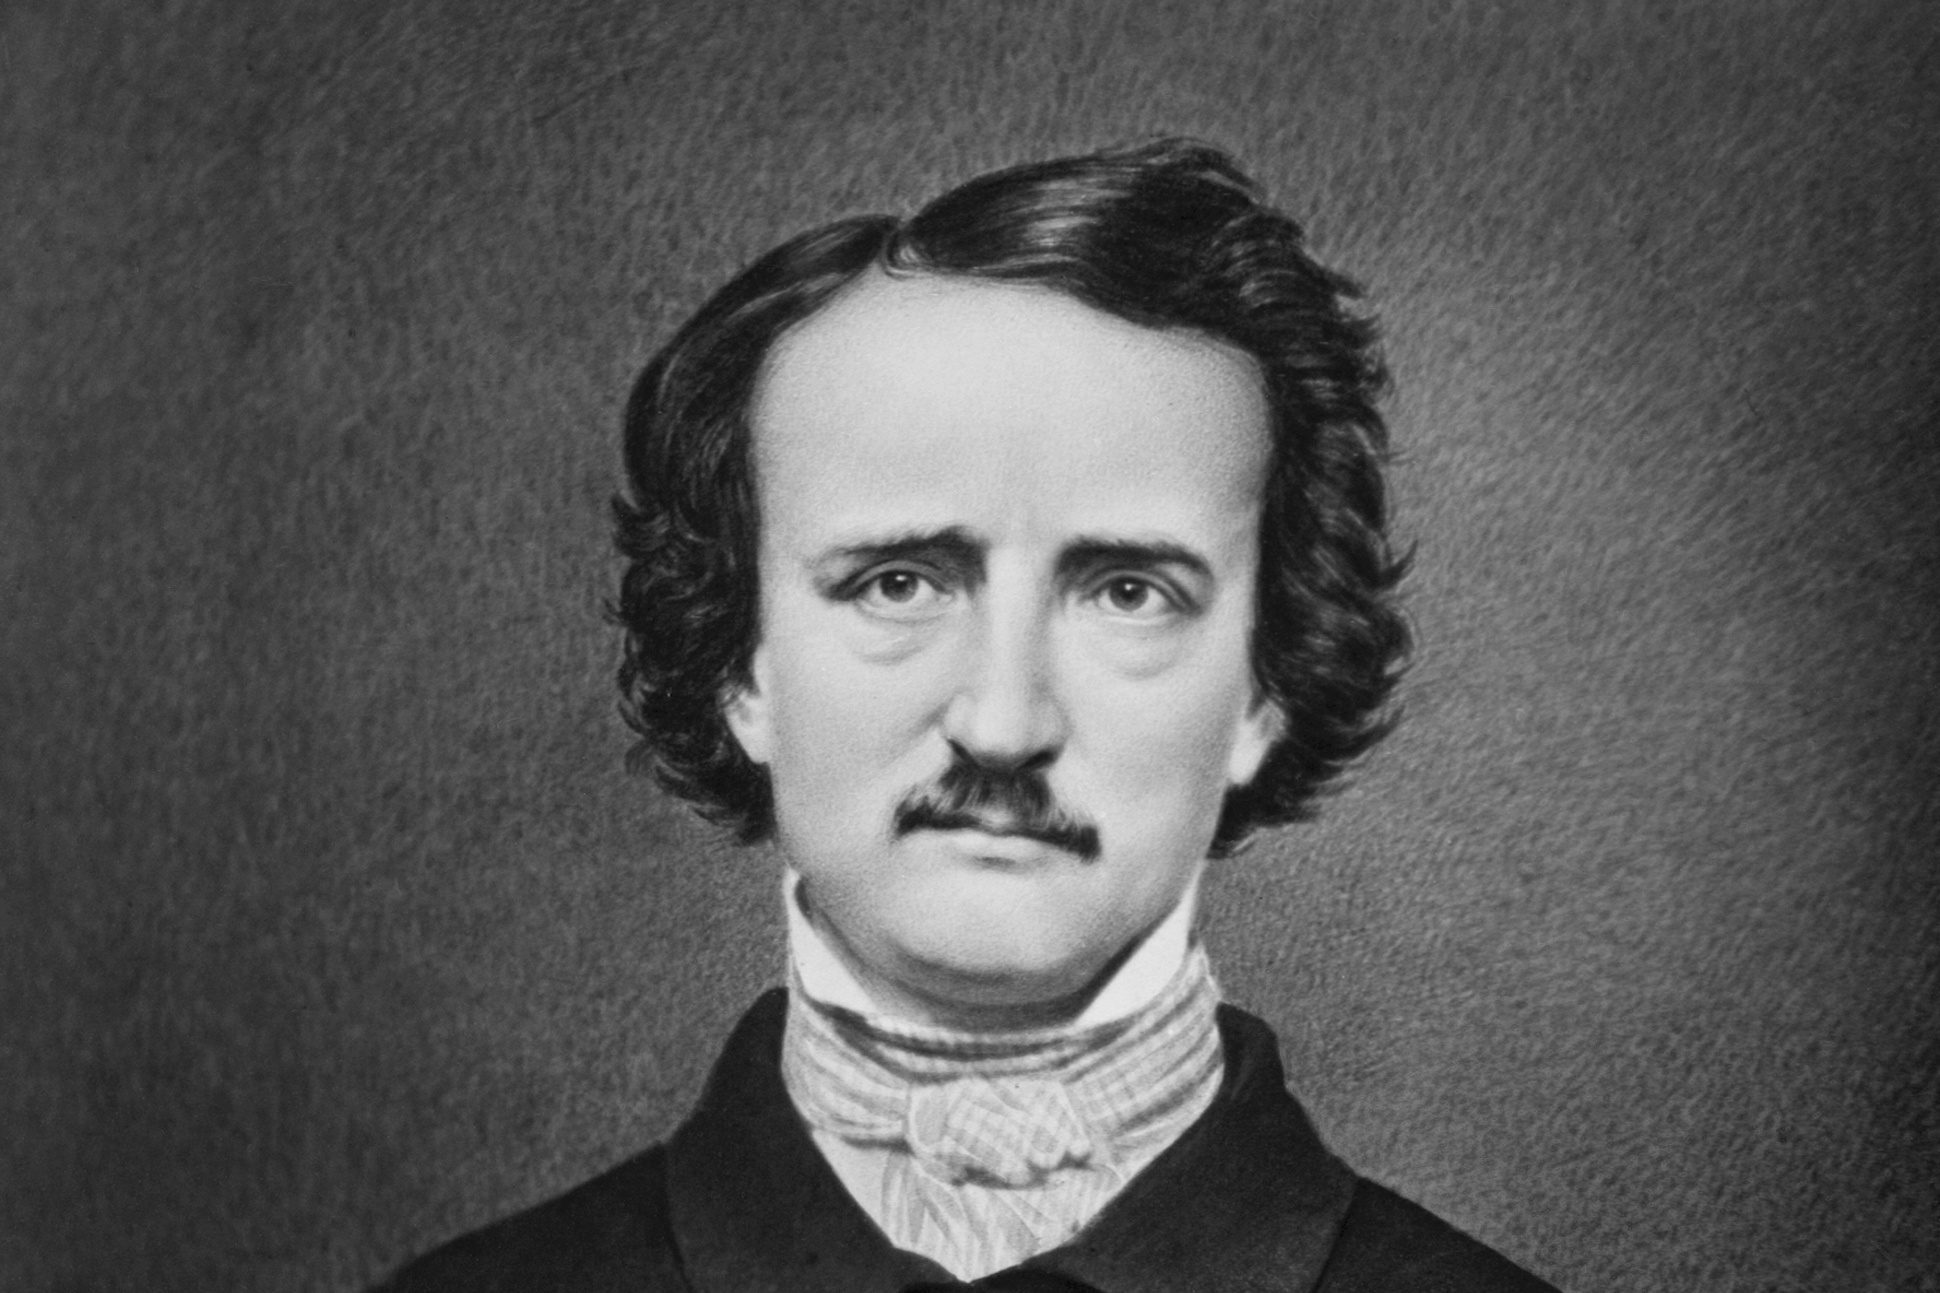 El enigma de la muerte de Edgar Allan Poe, en su 171 aniversario luctuoso